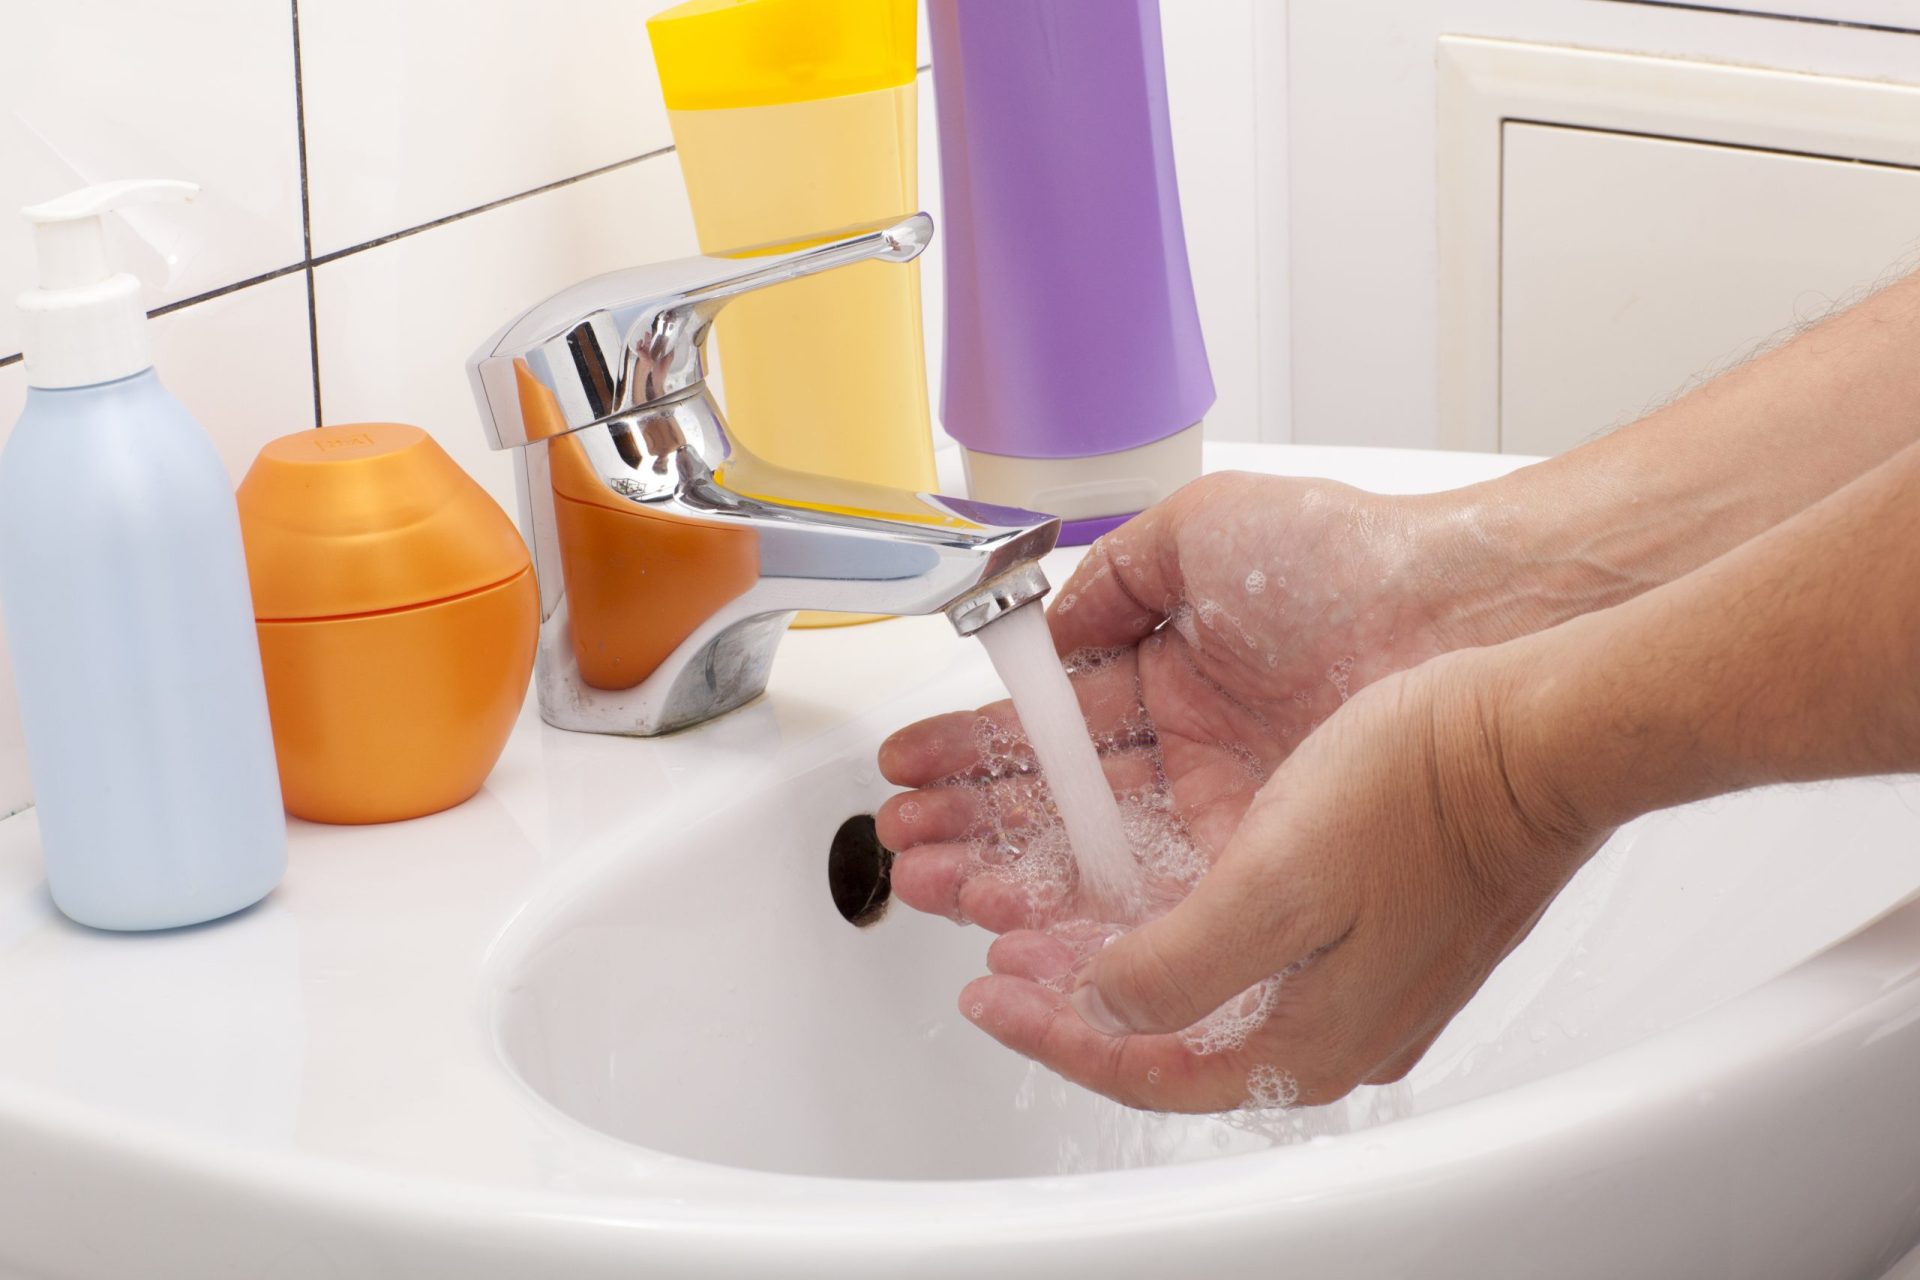 Ébola: UNICEF alerta para importância de reforçar lavagem das mãos